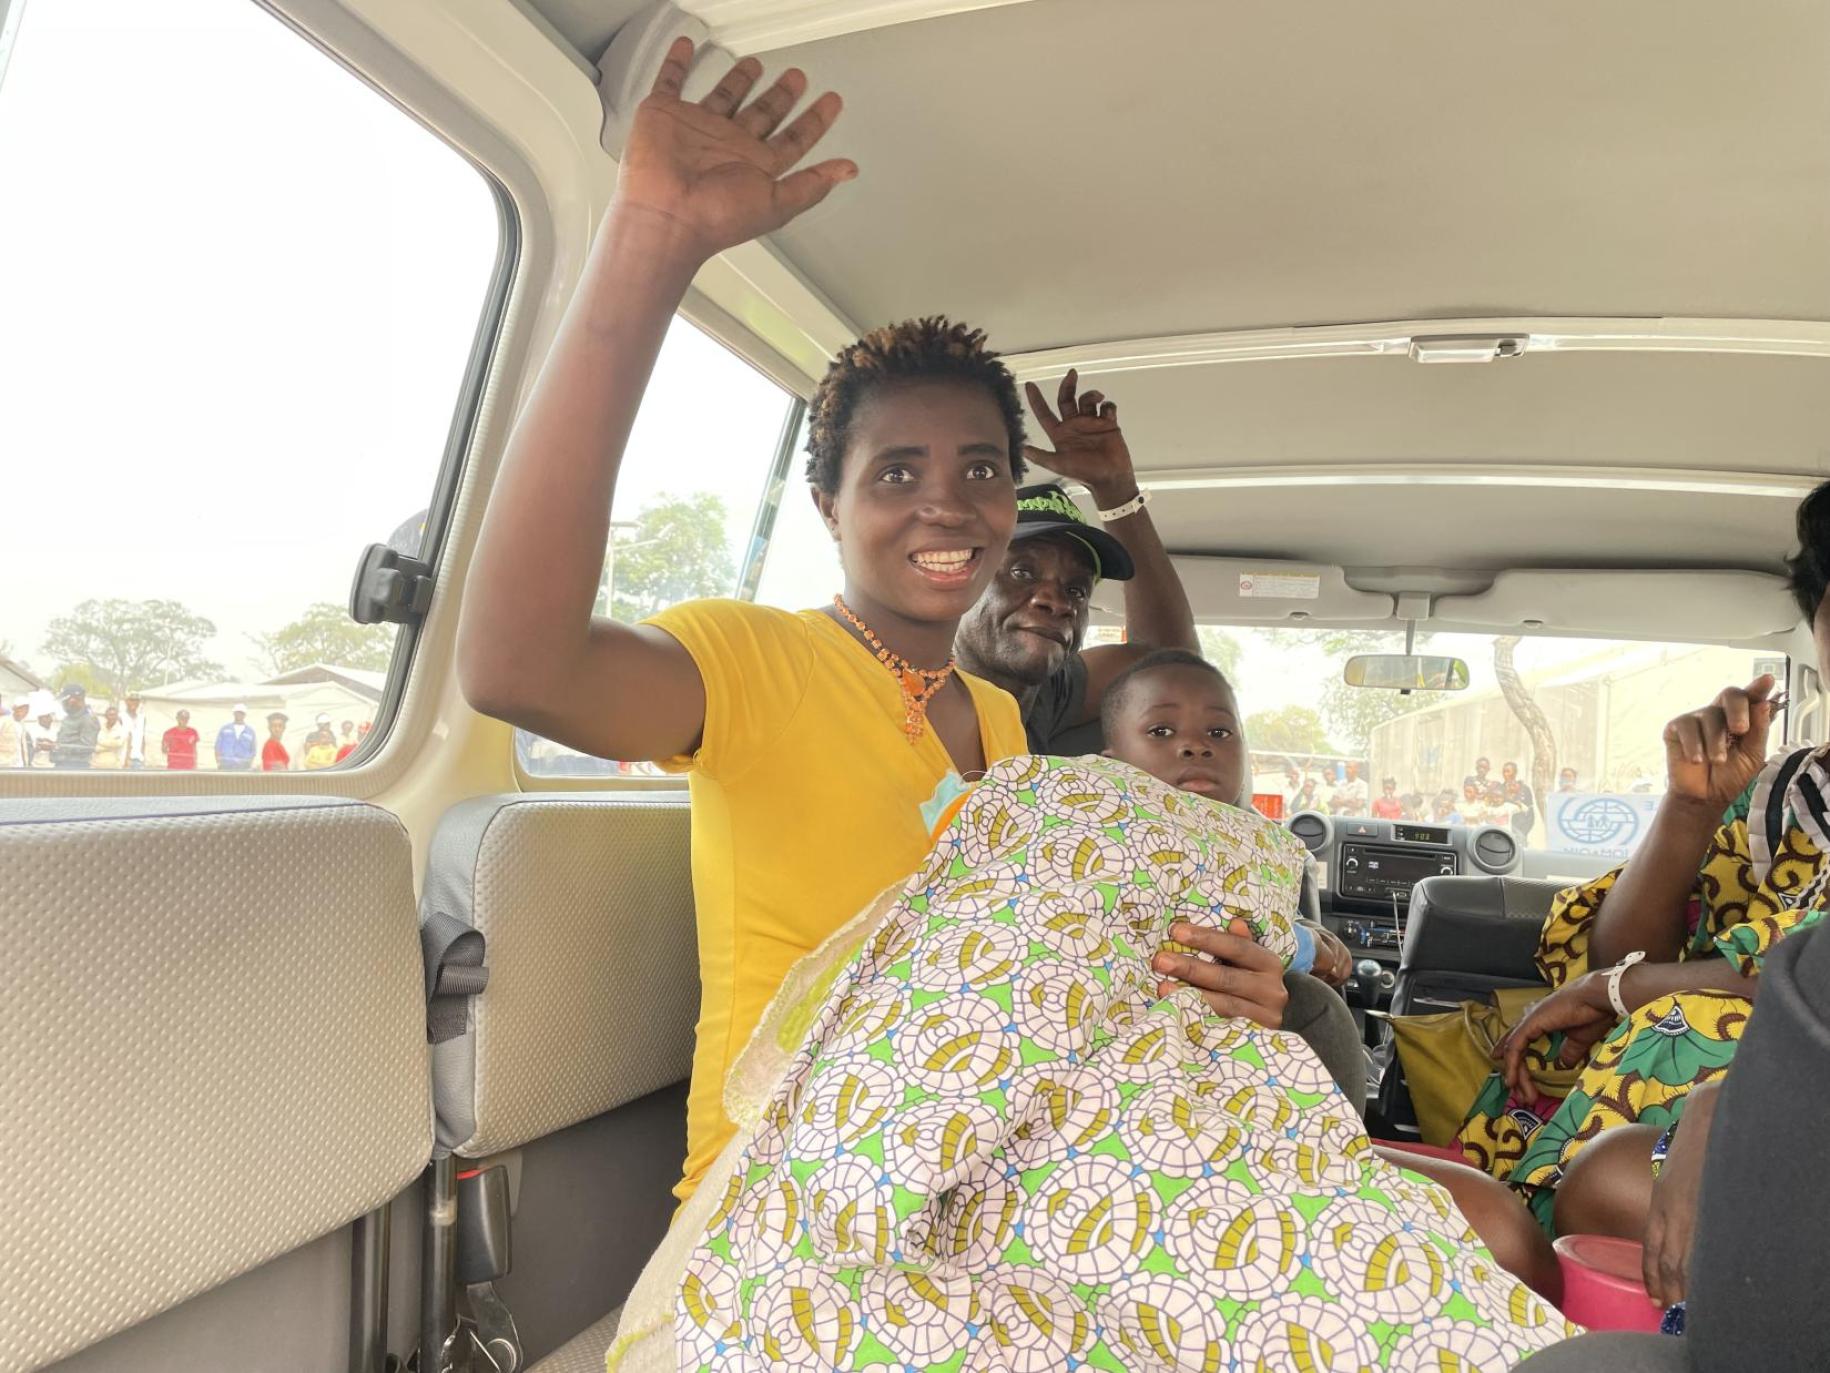 En Angola, une femme congolaise aux cheveux courts et vêtue d’un haut de couleur jaune à manches courtes est assise à bord d’un véhicule avec d’autres personnes, un bébé emmitouflé dans une couverture sur les genoux, et fait un signe d’adieu de la main droite en souriant.